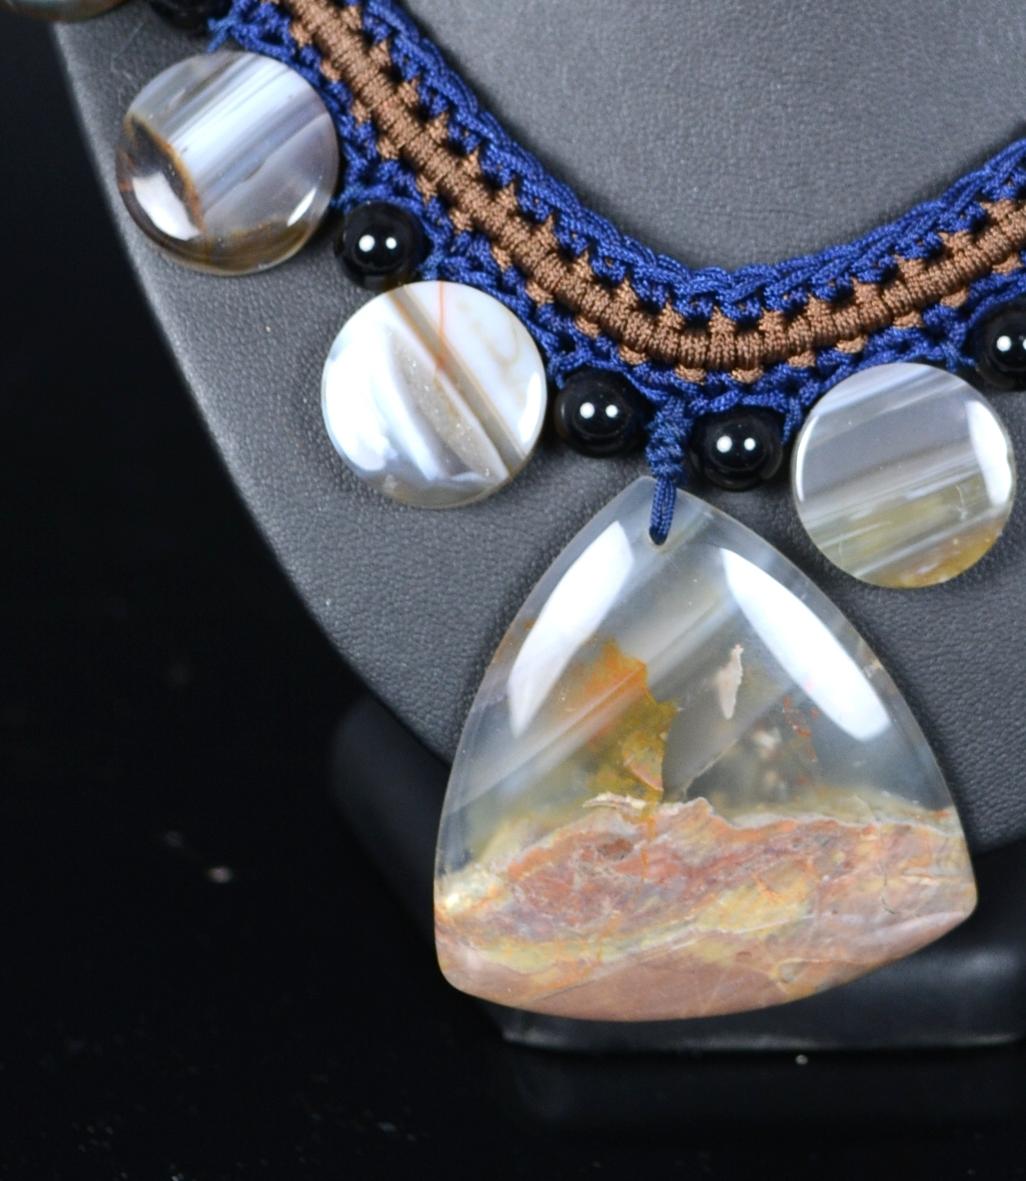 Halskette mit mexikanischen Achatplatten.
Halskette aus Schnüren in verschiedenen Farbtönen, dank derer die Perlen, aus denen sie besteht, platziert und hervorgehoben werden: flache runde Scheiben wechseln sich mit dunklen kugelförmigen Perlen ab,